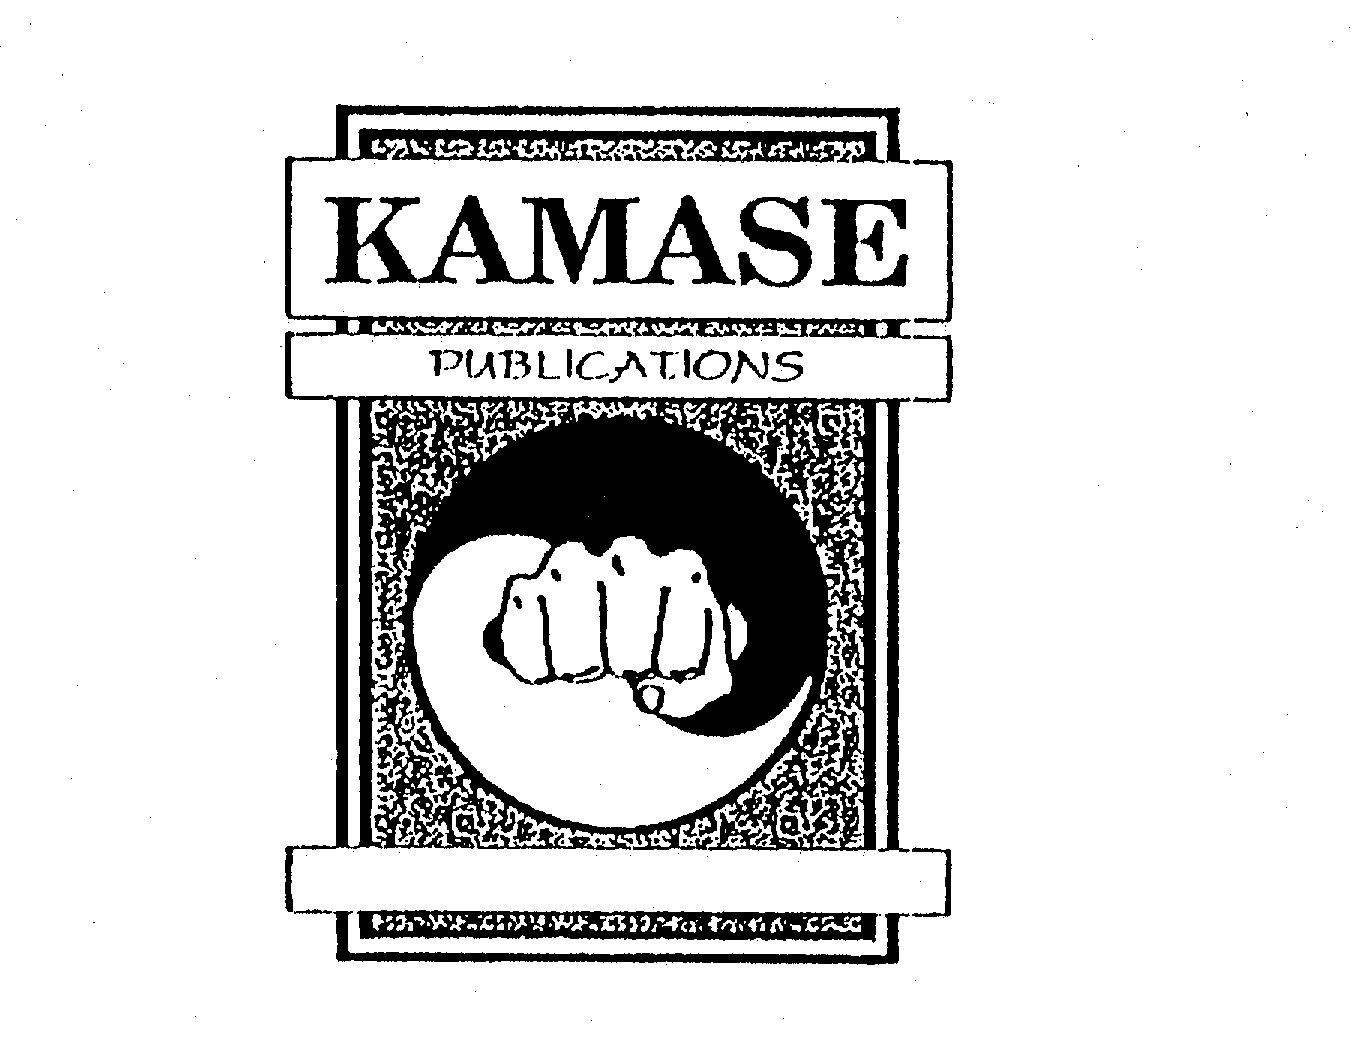  KAMASE PUBLICATIONS